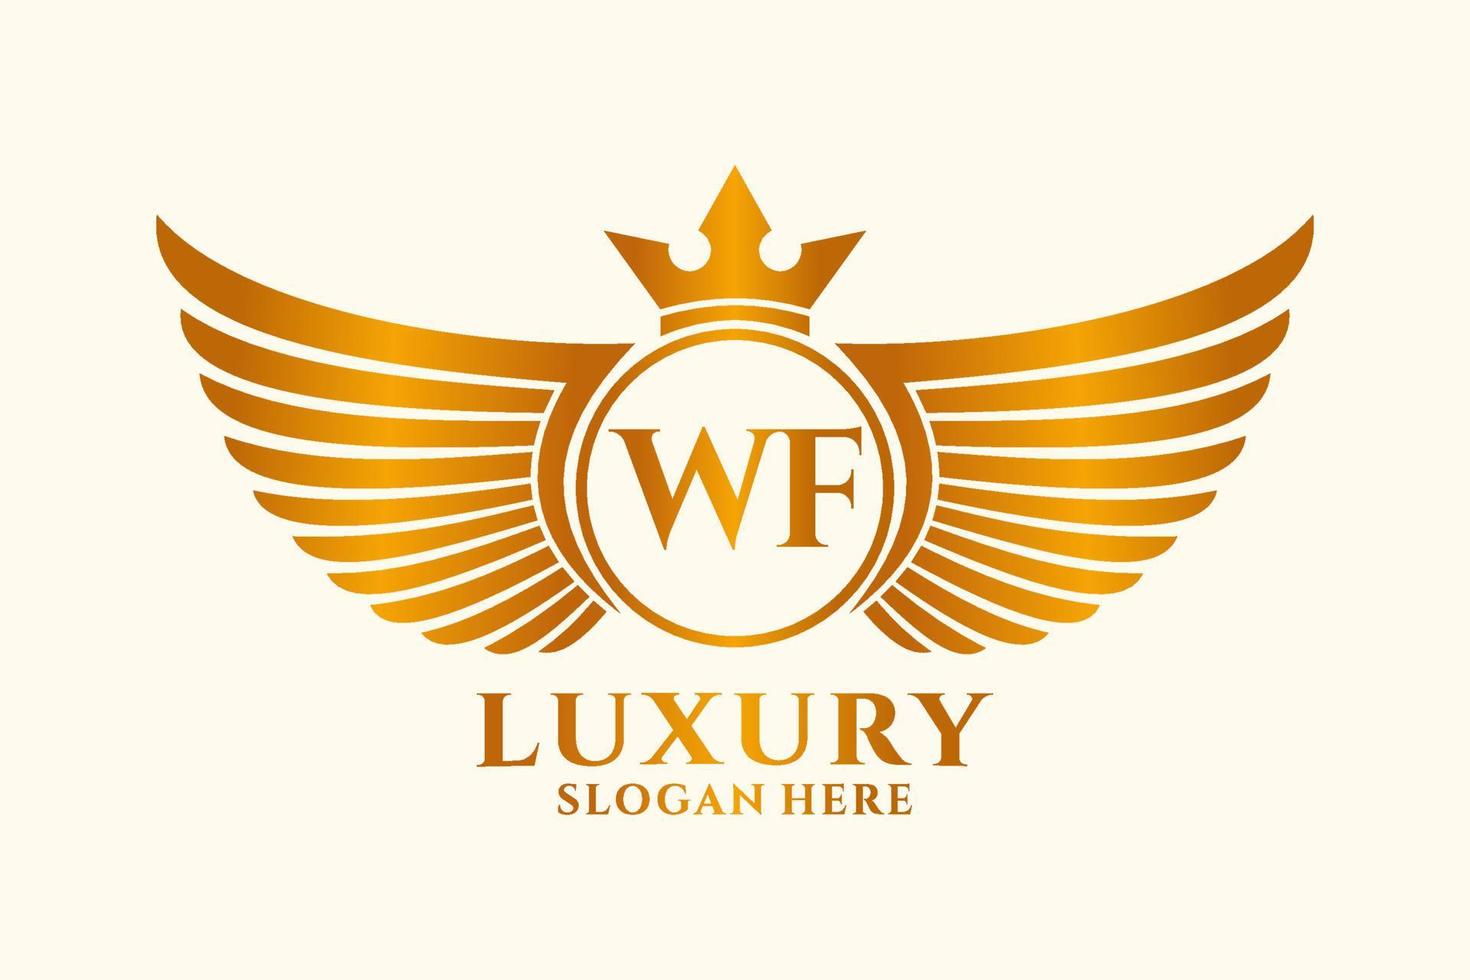 lettre d'aile royale de luxe wf crête logo couleur or vecteur, logo de victoire, logo de crête, logo d'aile, modèle de logo vectoriel. vecteur